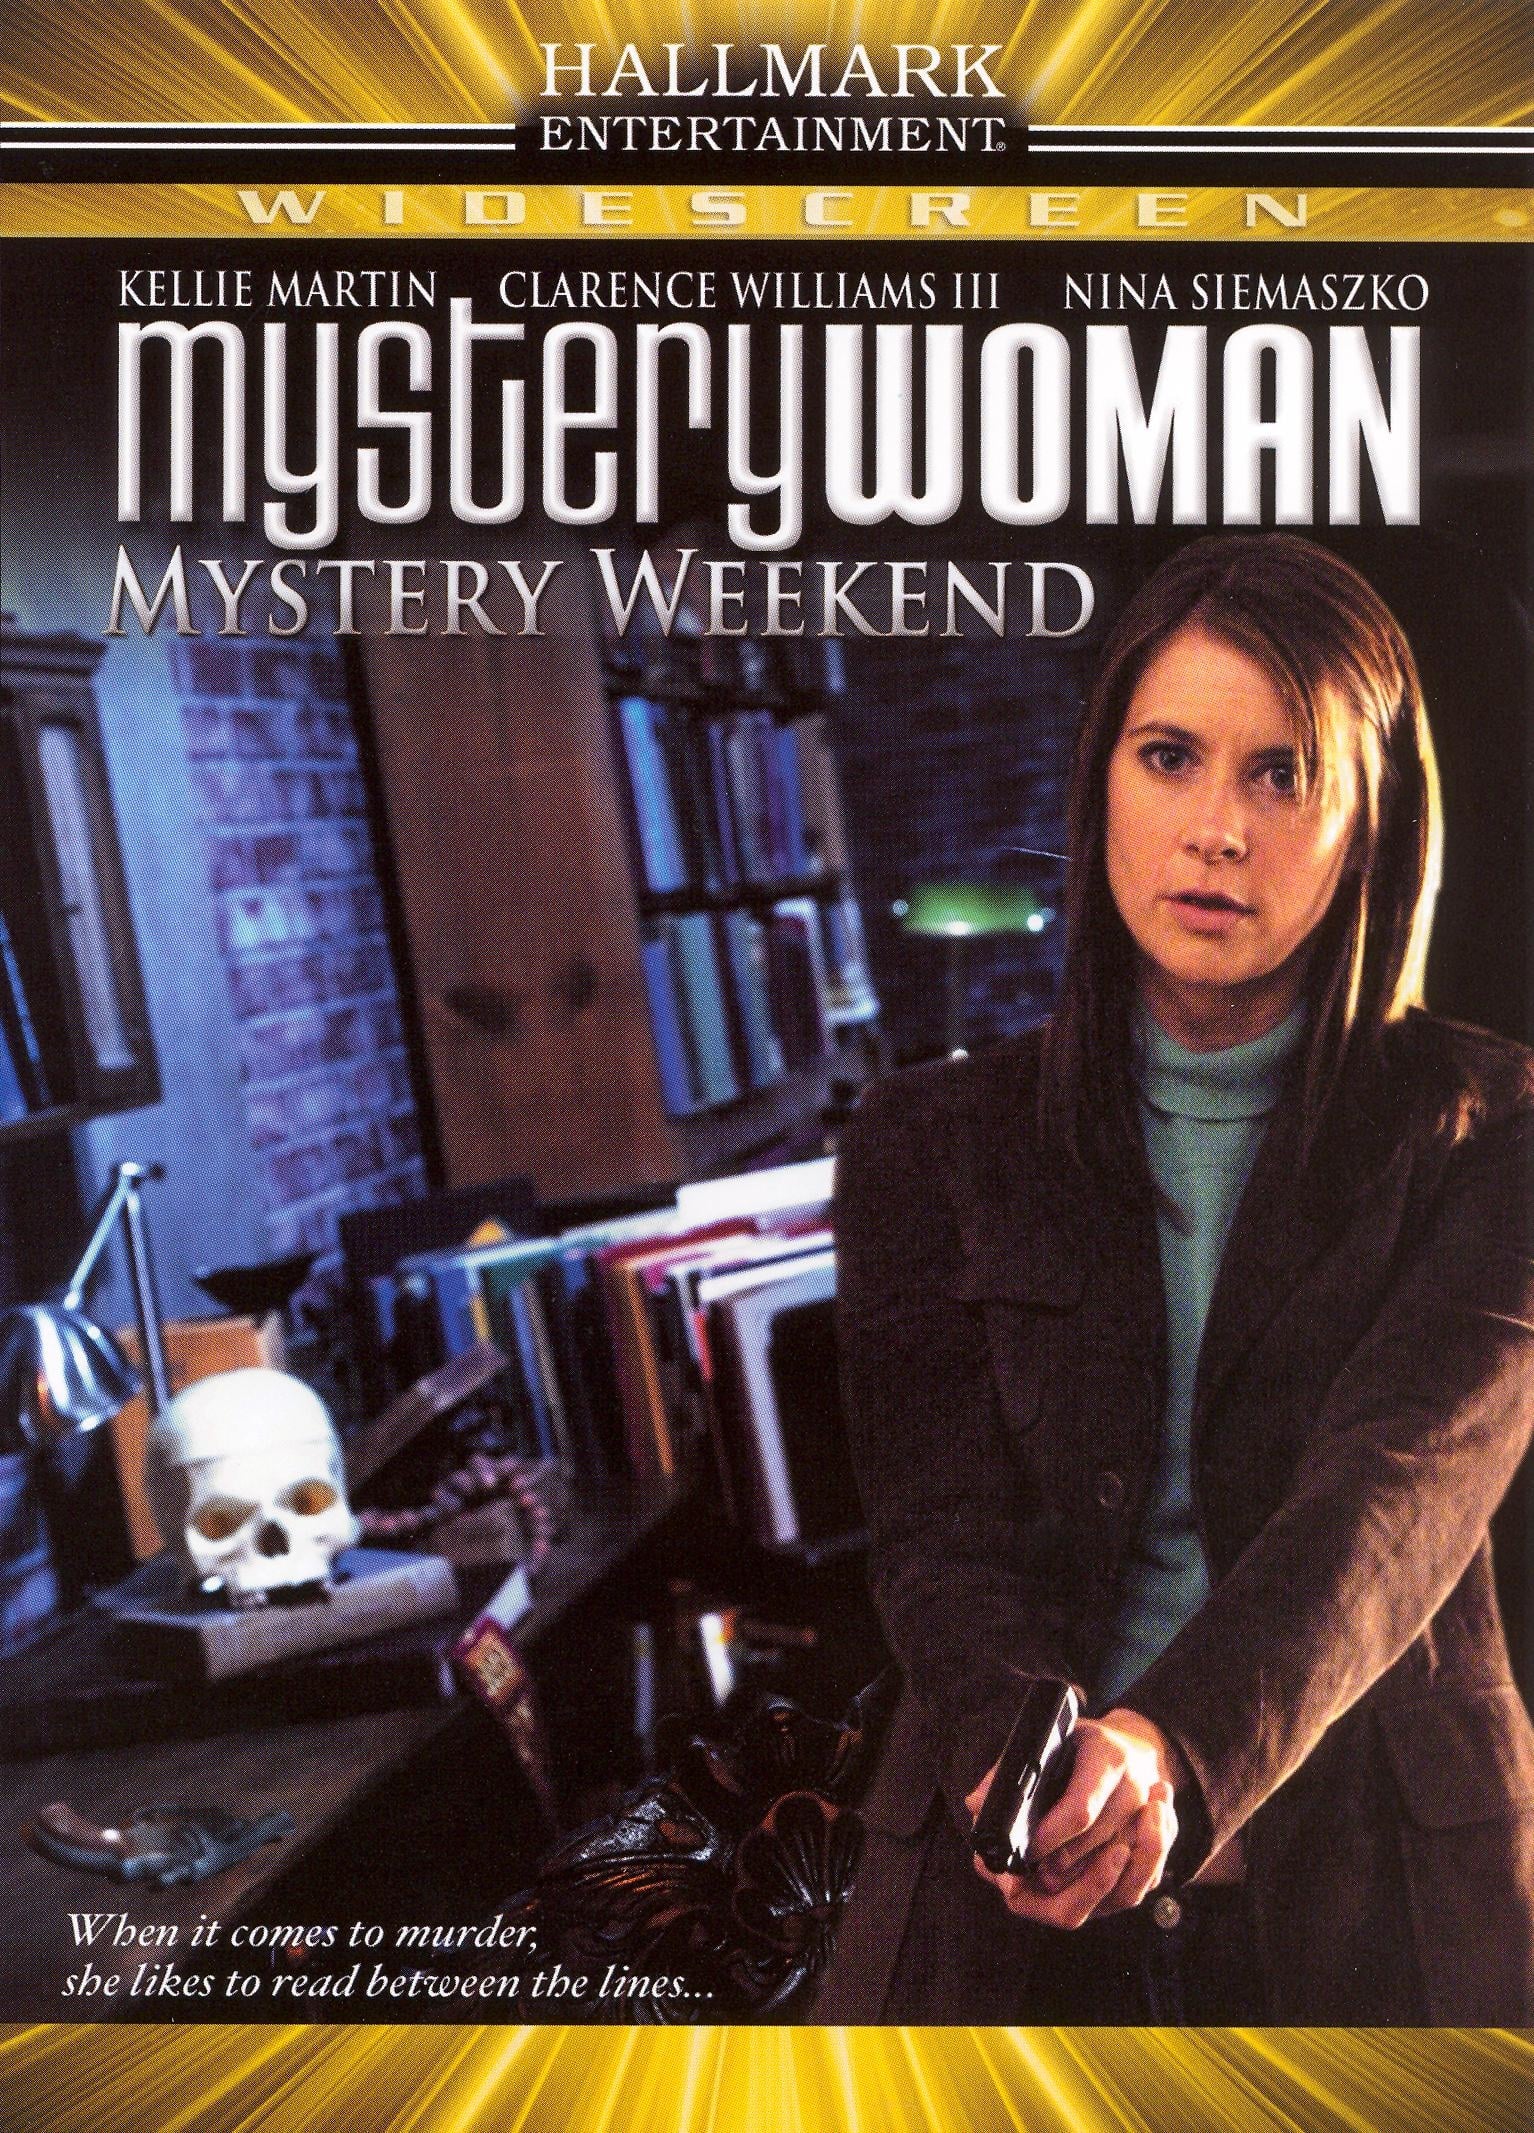 Mystery Woman: Mystery Weekend (2005)